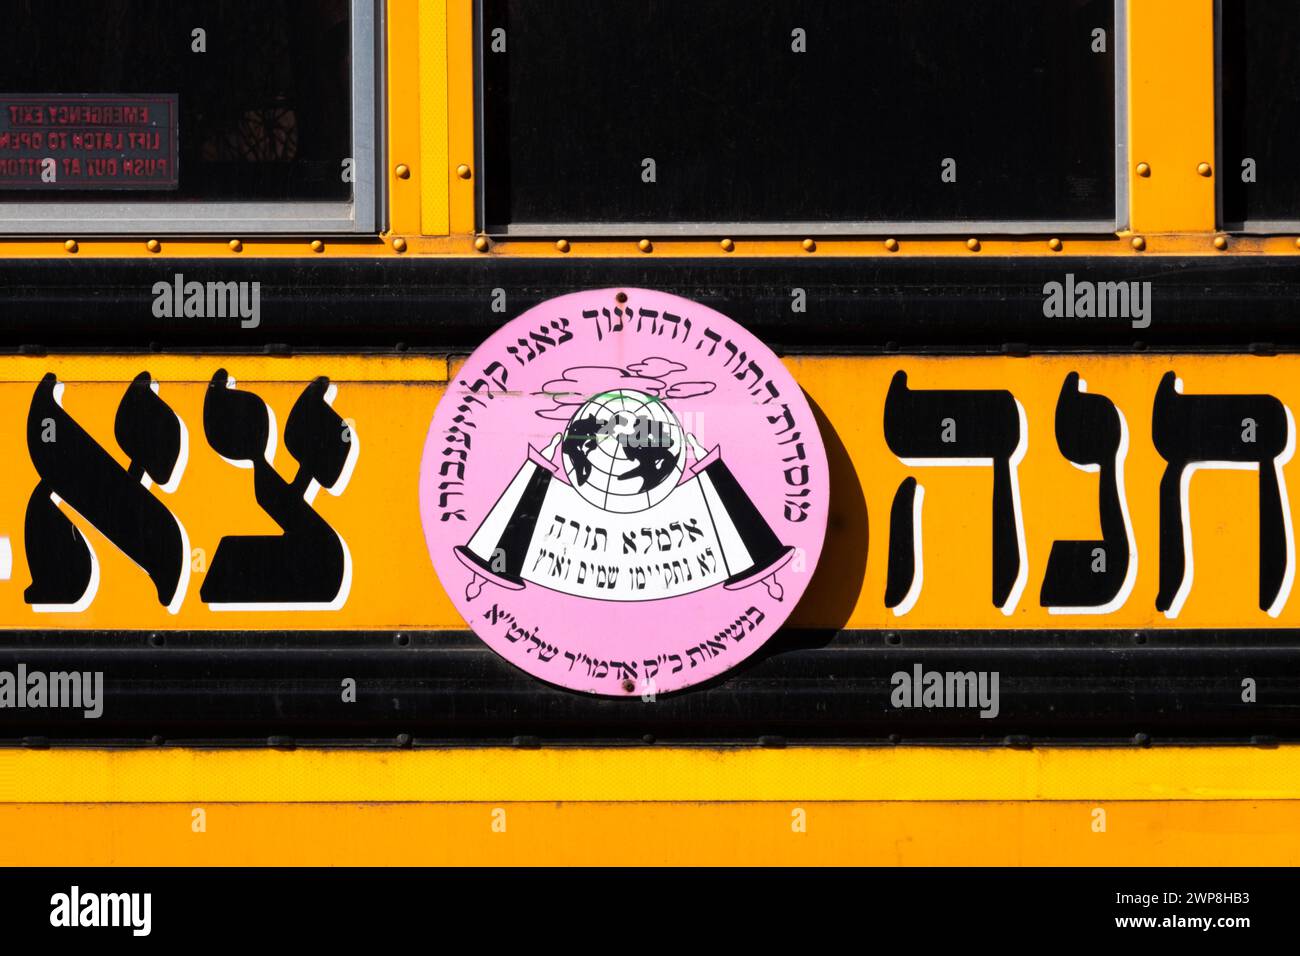 Un bus scolaire avec un logo en hébreu pour le groupe juif hassidique Sanz Klausenburg.À Williamsburg, Brooklyn, New York. Banque D'Images